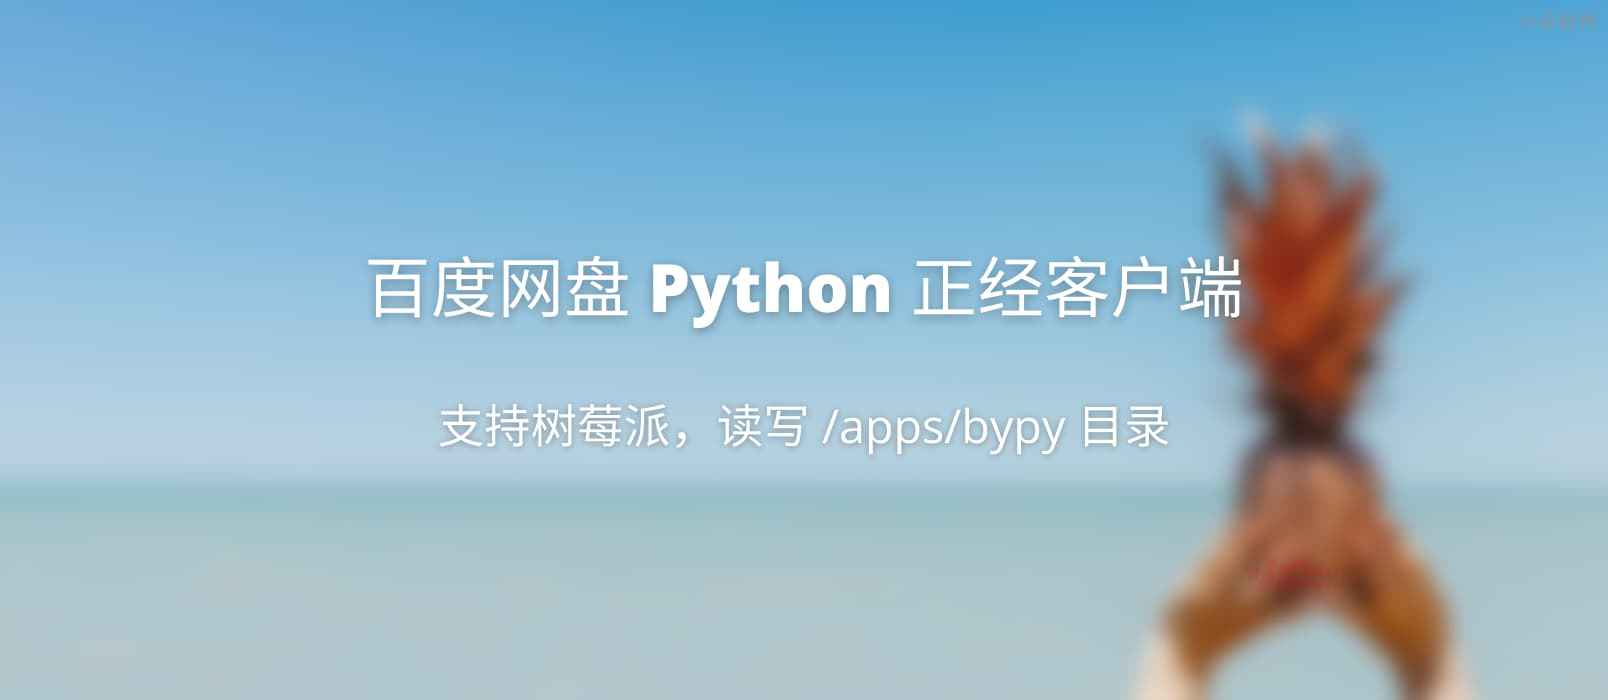 百度网盘 Python 客户端 – 正经客户端，可在树莓派上使用